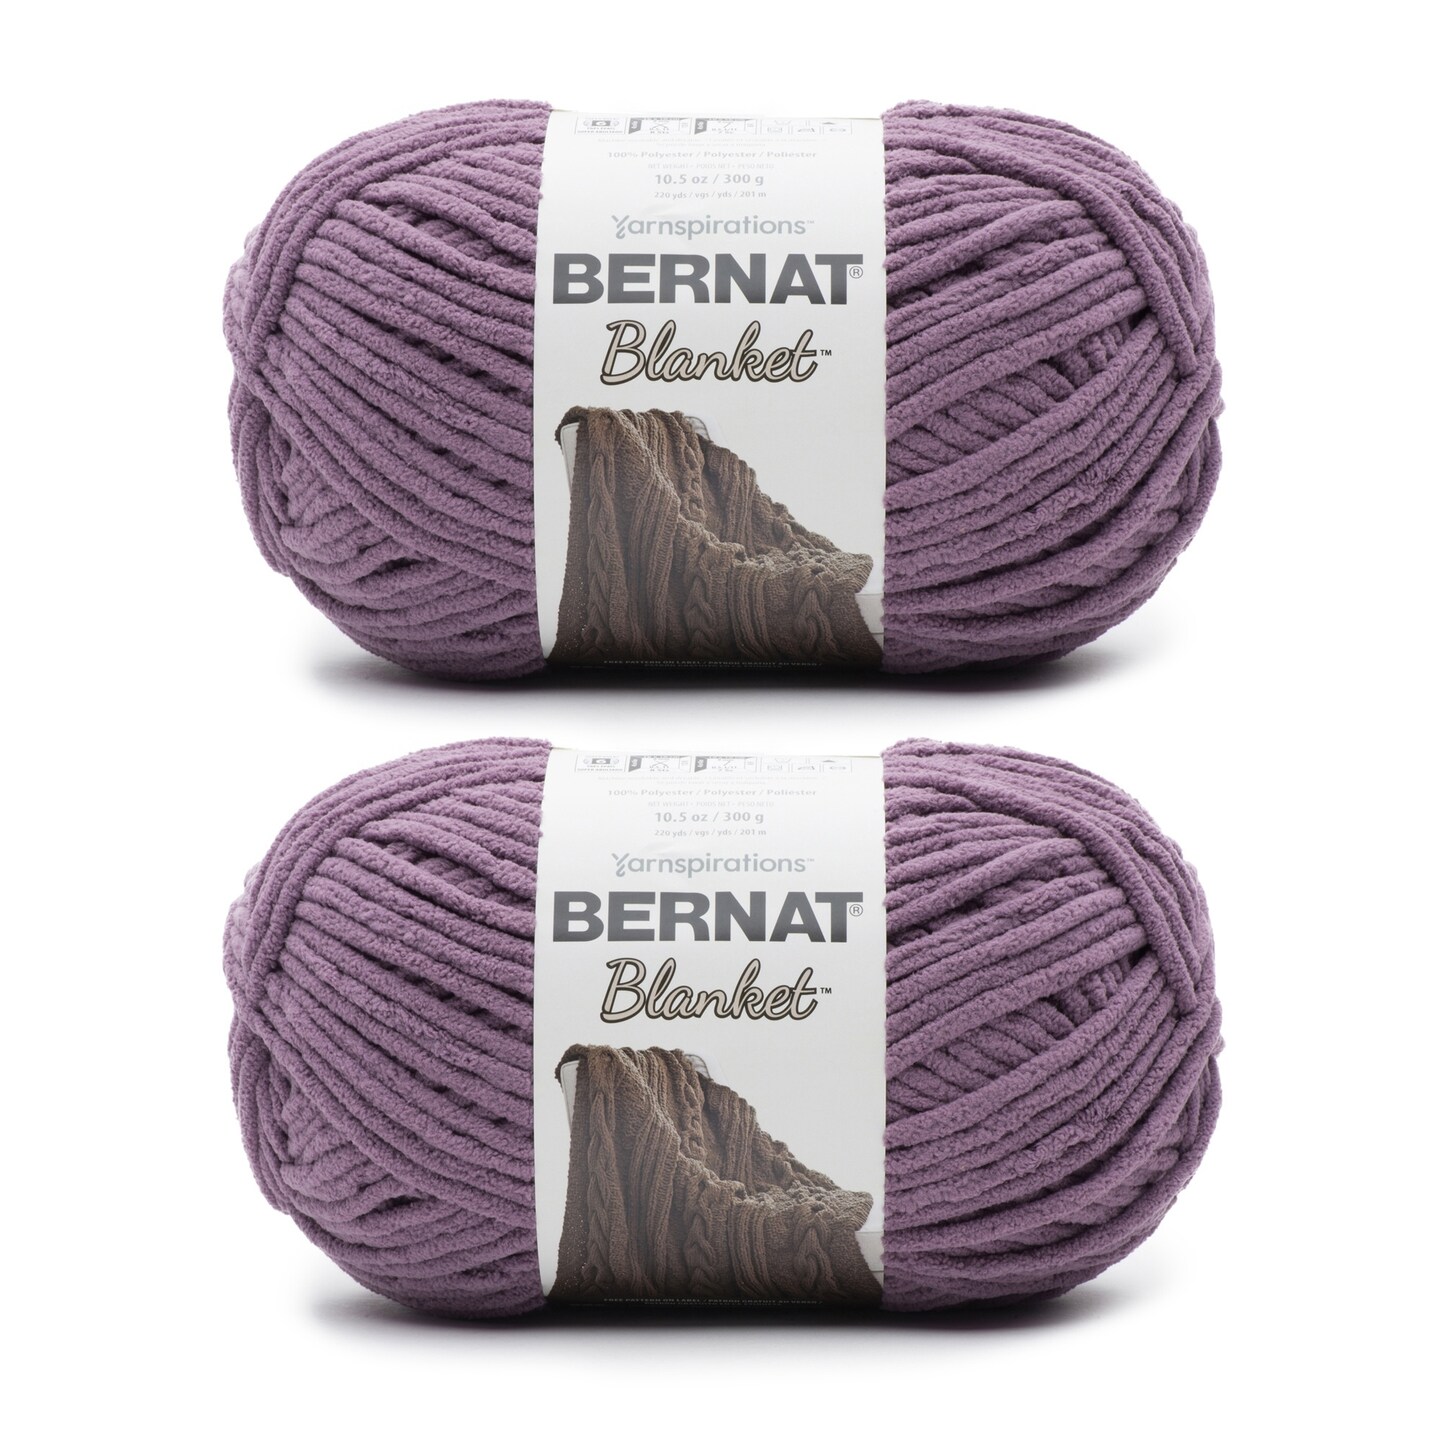 Bernat Blanket Shadow Purple Yarn - 2 Pack of 300g/10.5oz